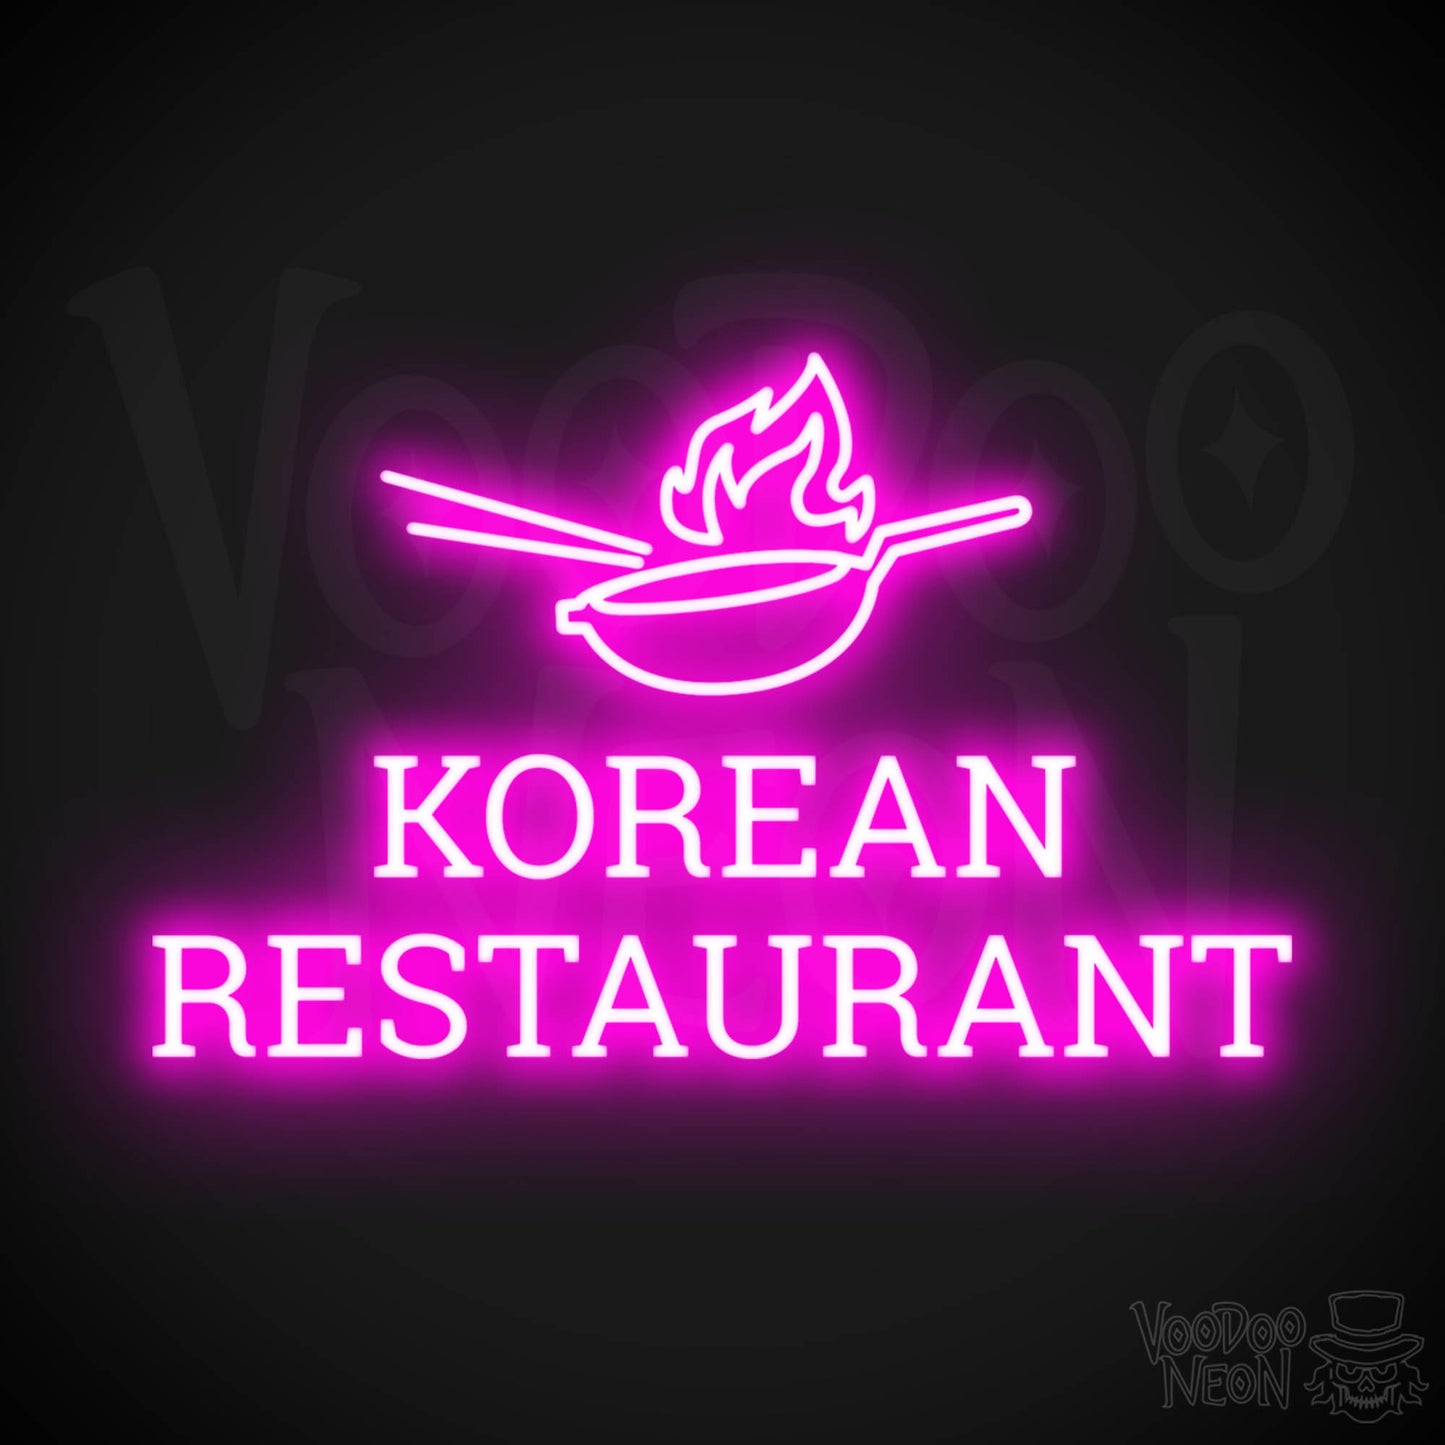 Korean Restaurant LED Neon - Pink